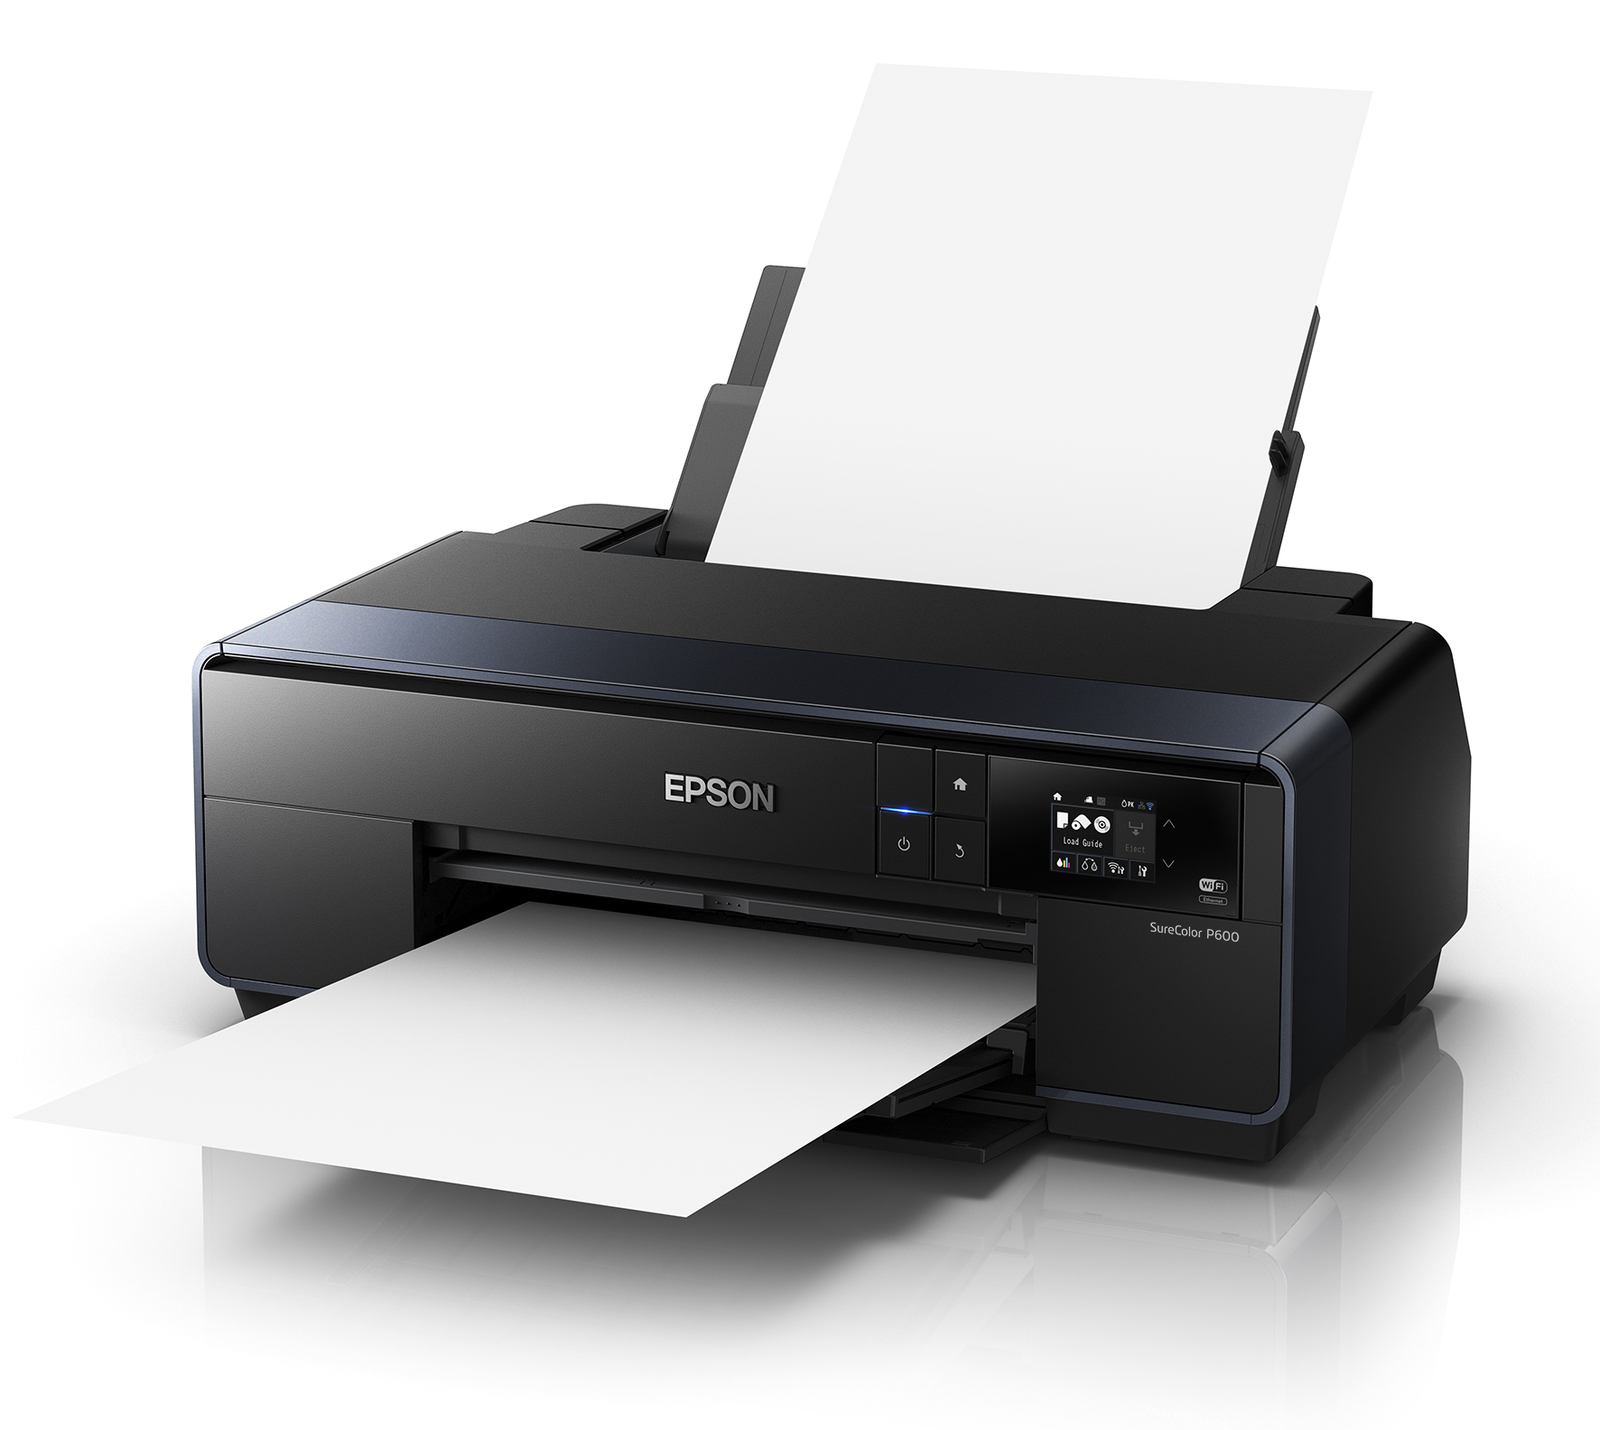  Epson  SureColour P600  A3 Colour Inkjet Printer